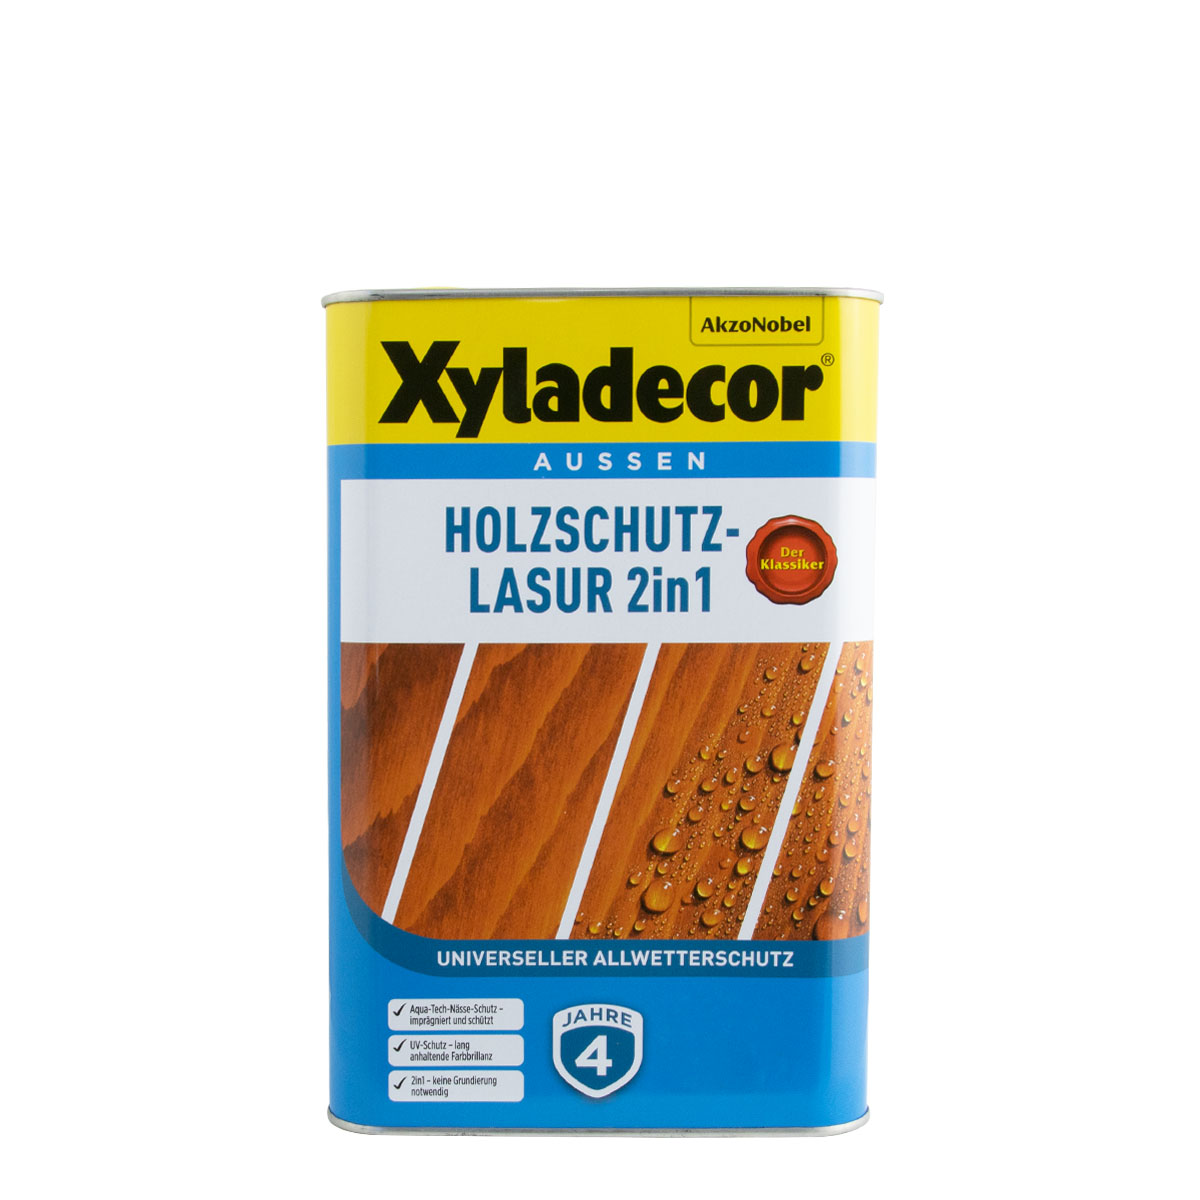 Xyladecor Holzschutz-Lasur 2in1 4L Nussbaum